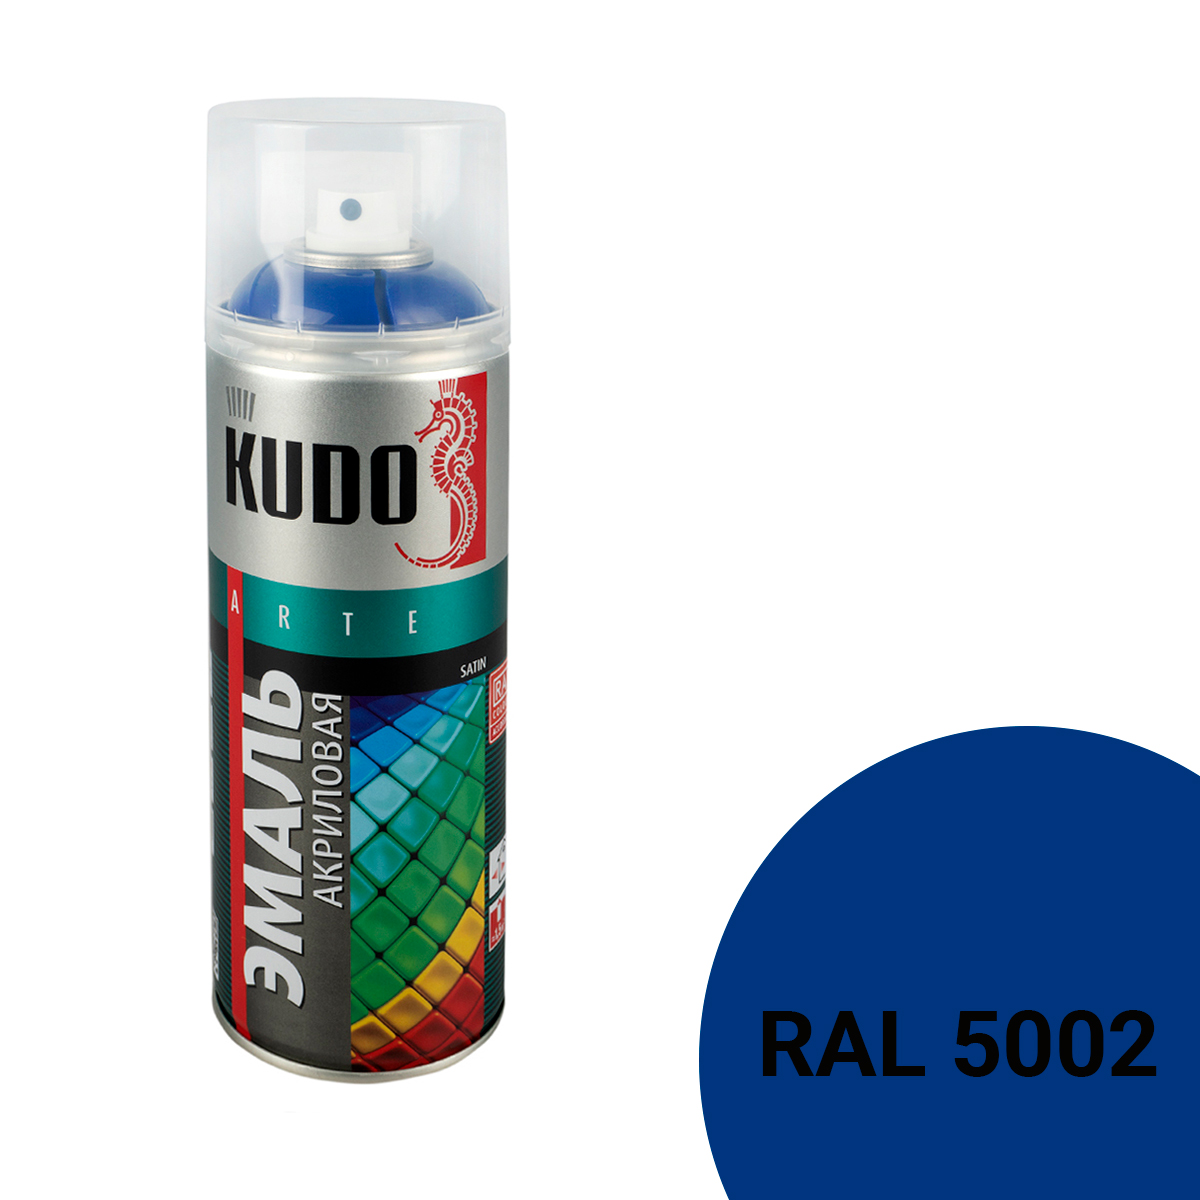 Аэрозольная акриловая краска Kudo Satin KU-0A5002, 520 мл, синяя 